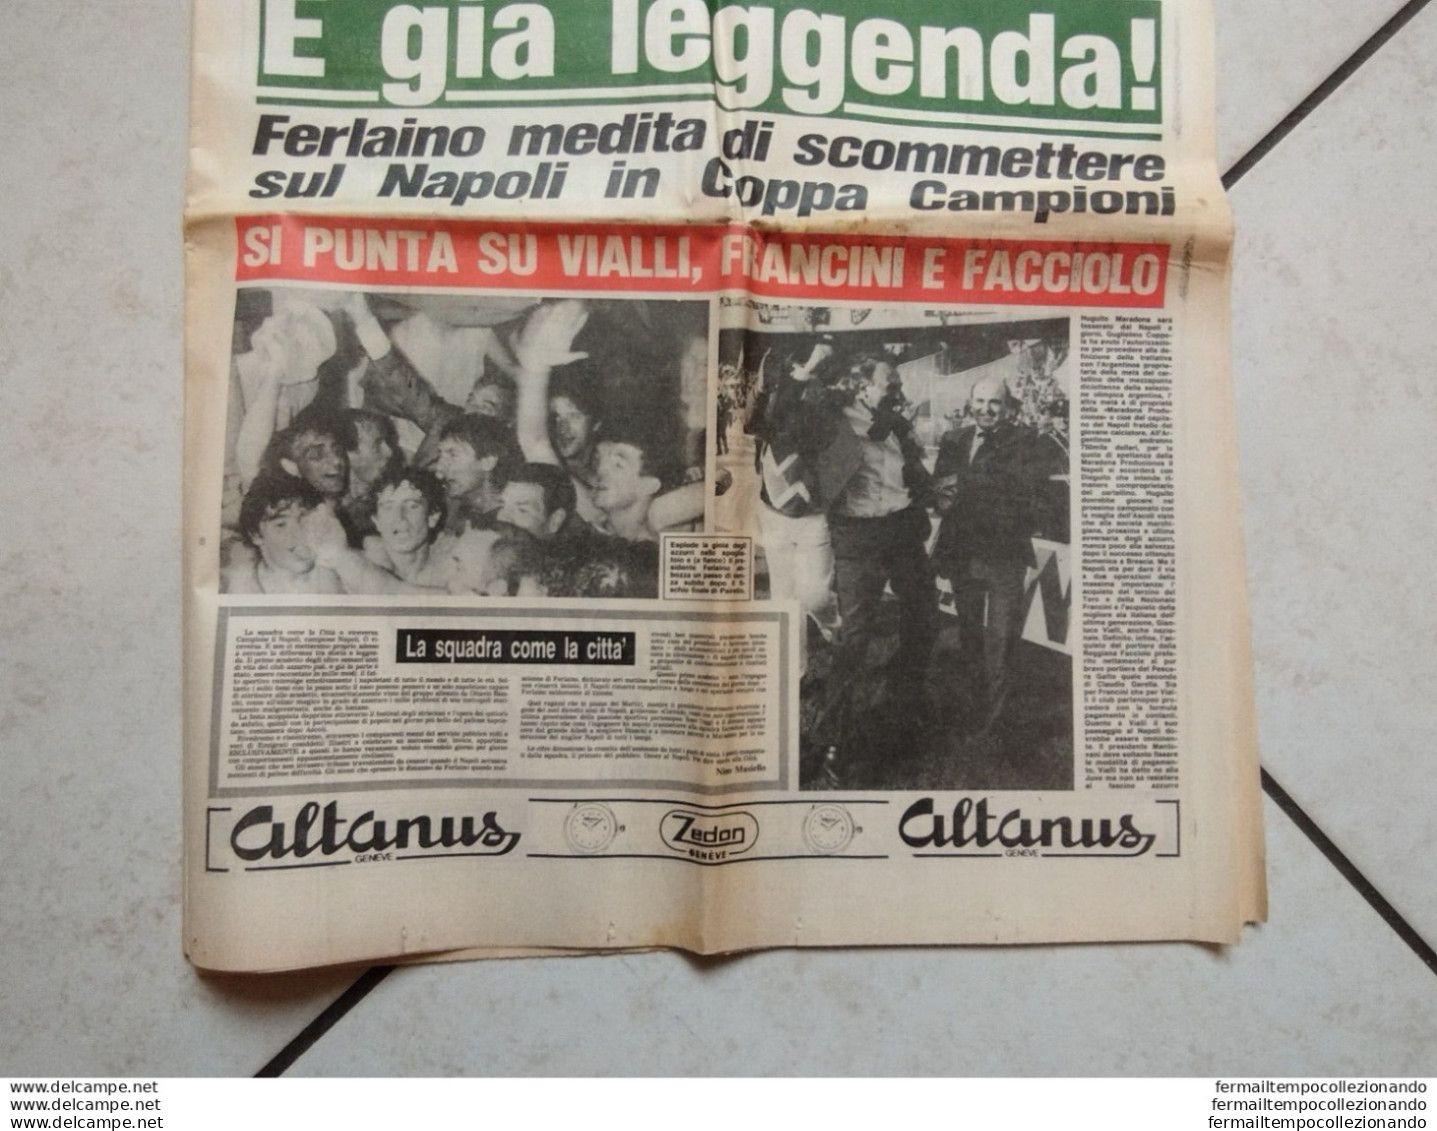 220  giornale sportsud 12 maggio 1987 e' gia leggenda 1 scudetto napoli maradona